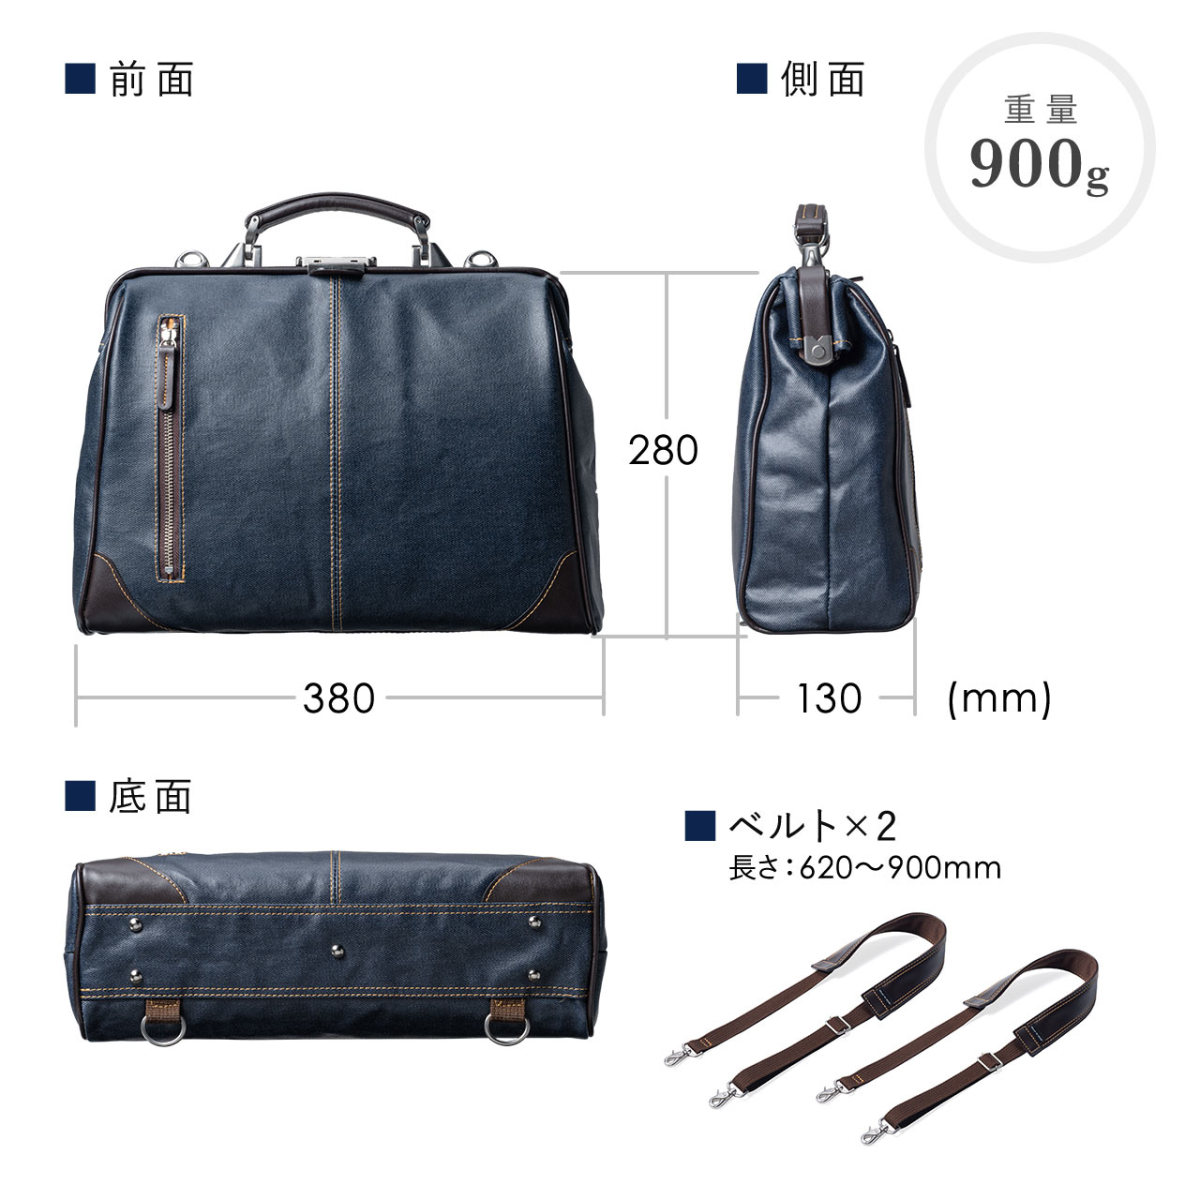 ダレスバッグ メンズ ビジネスバッグ 豊岡鞄 日本製 簡易防水 撥水 本革 40代 50代 3WAY 鍵付 ビジネスバック 200-BAG147